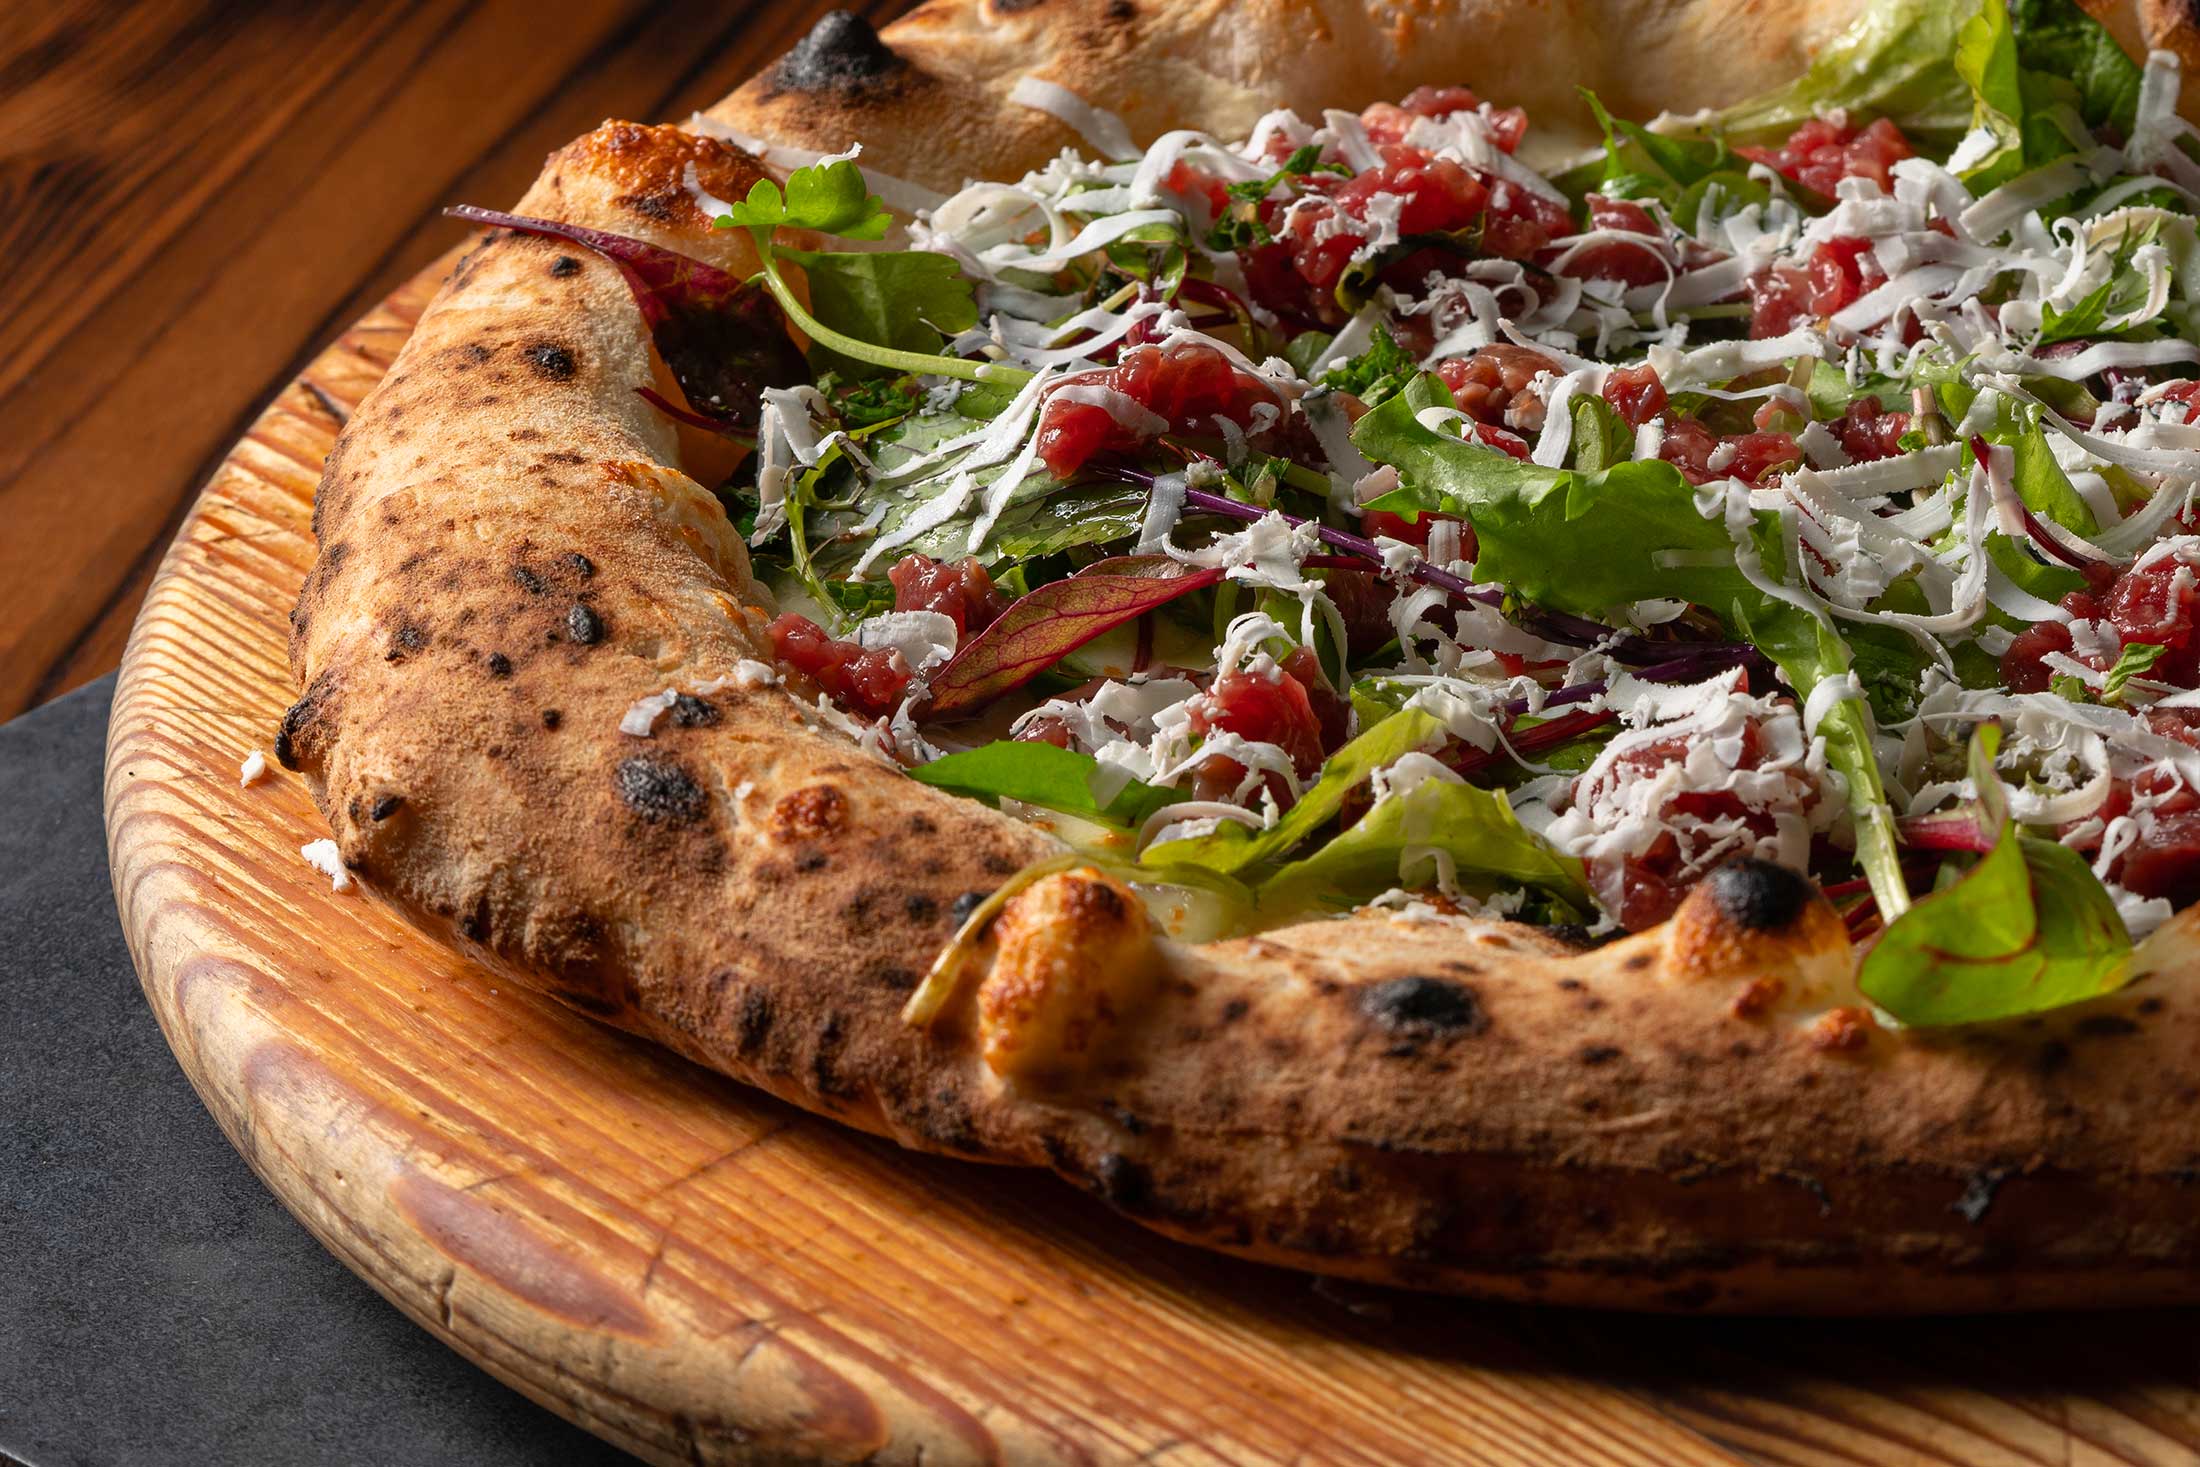 50 Top Pizza 2021: Martucci primo, Vitagliano secondo e Seu terzo. La classifica completa